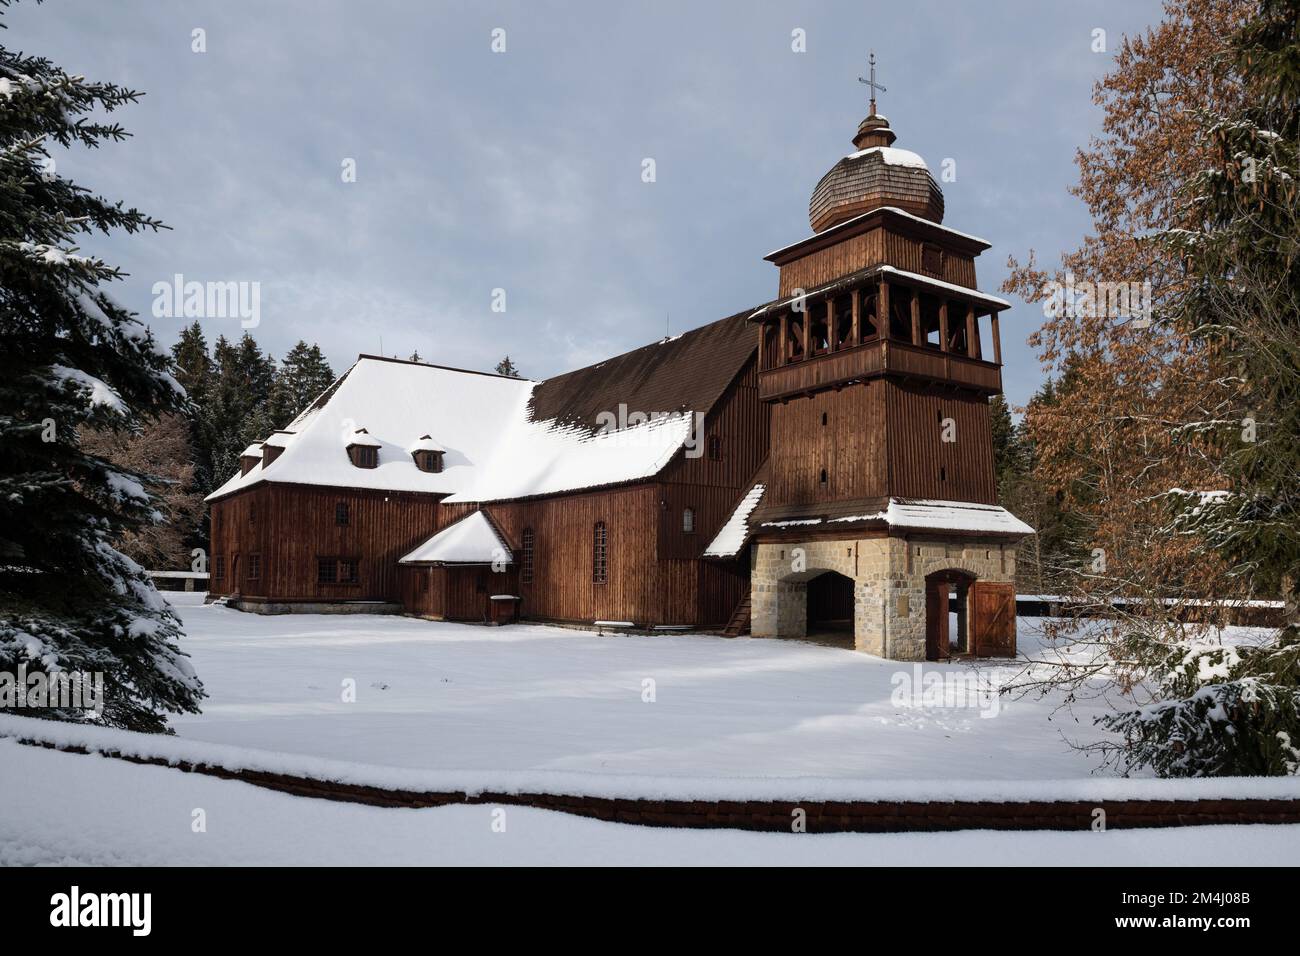 Église évangélique articulaire en bois de Svaty Kriz - l'un des plus grands bâtiments en bois d'Europe centrale, Slovaquie Banque D'Images